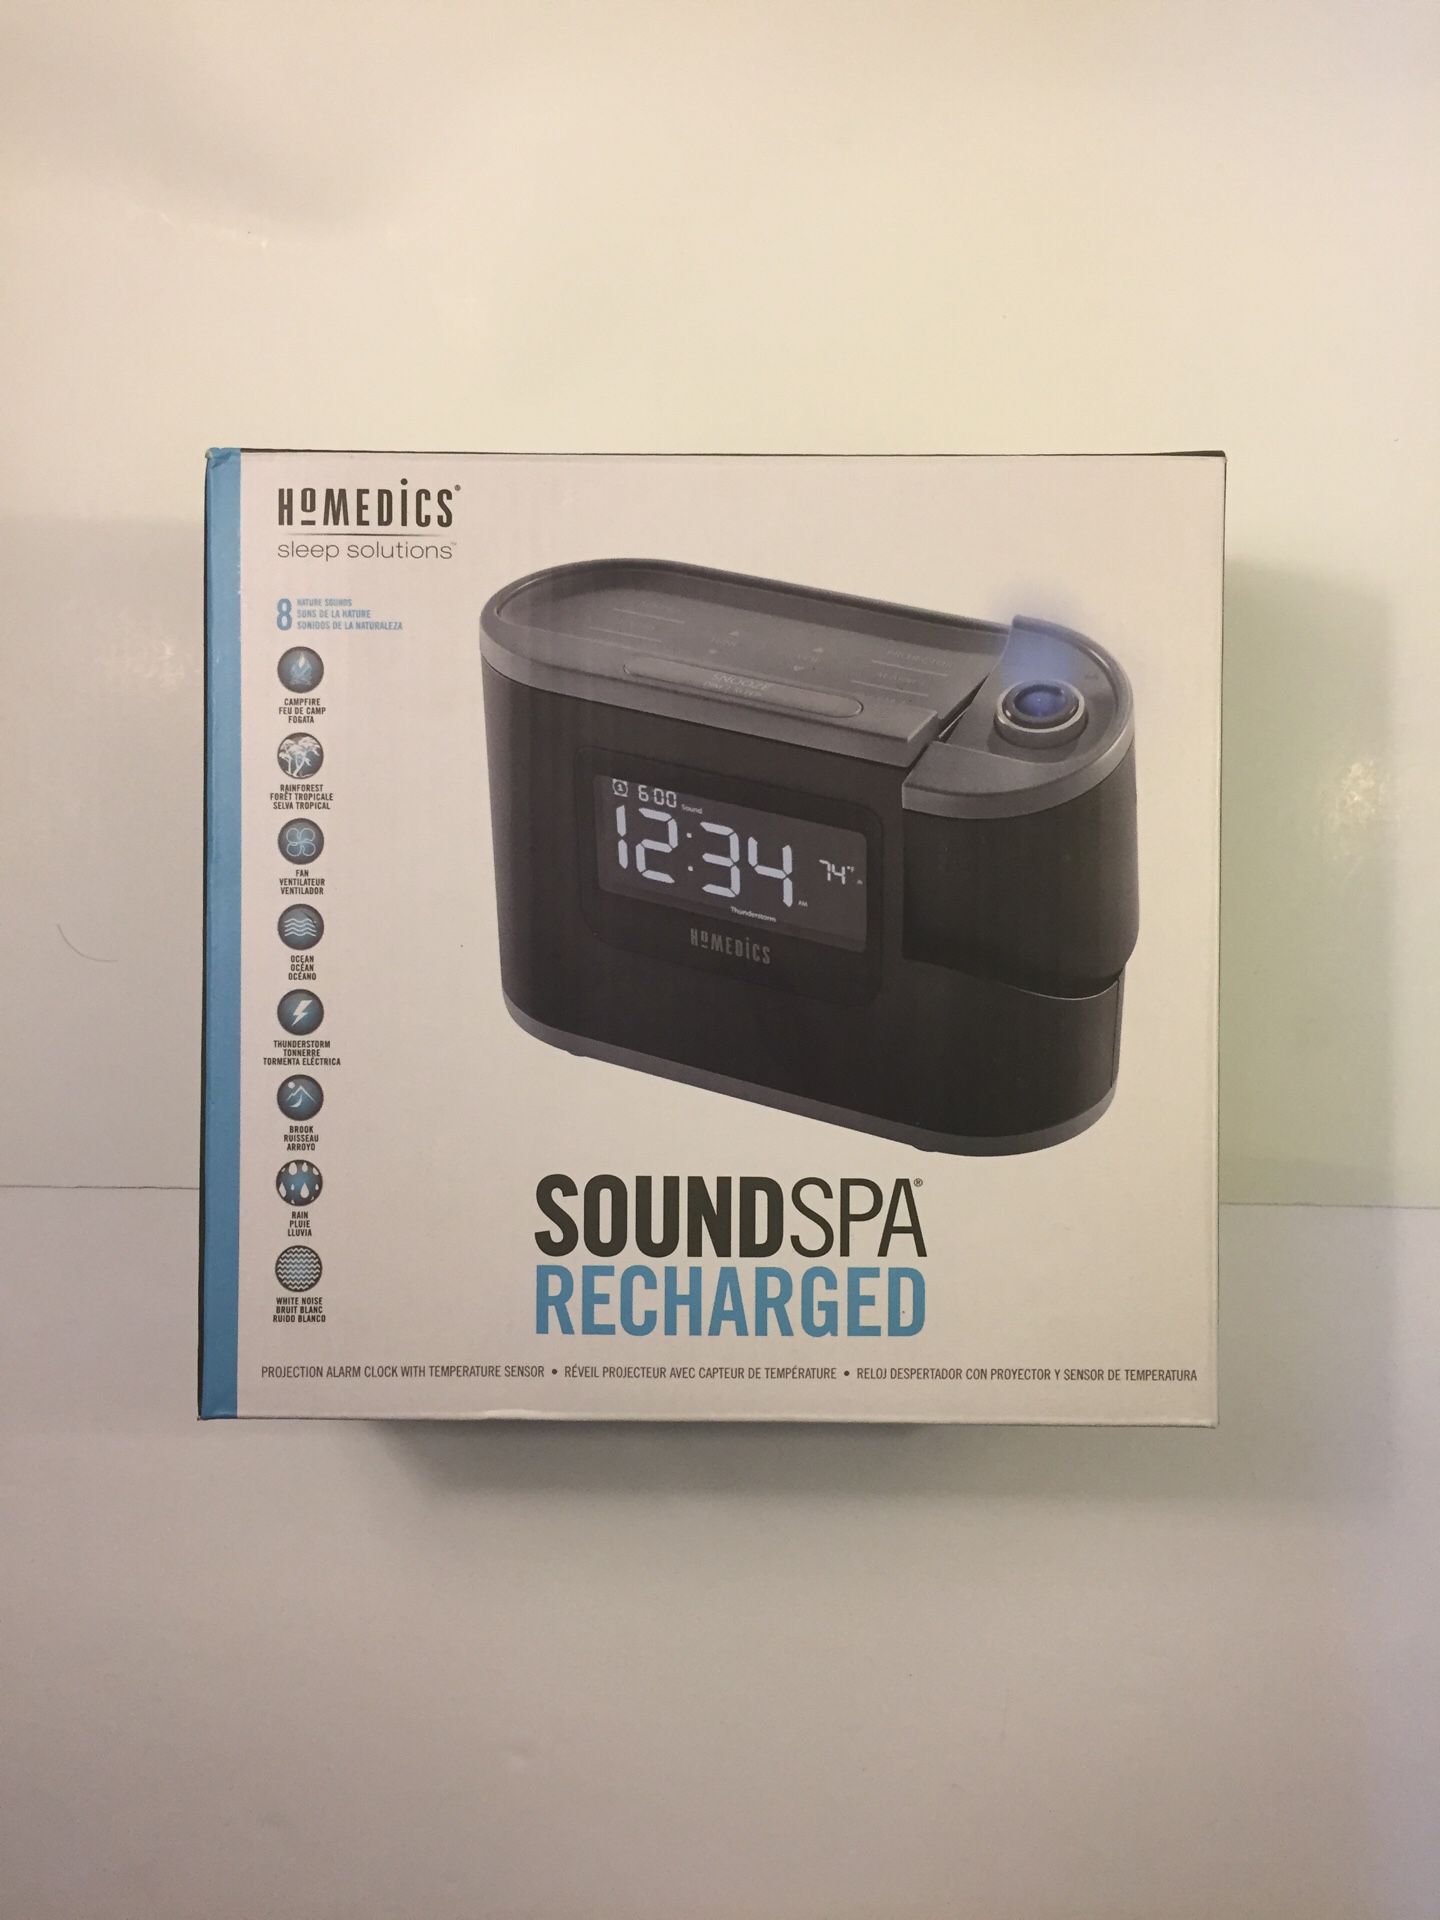 HoMedics SoundSpa Recharged alarm clock.